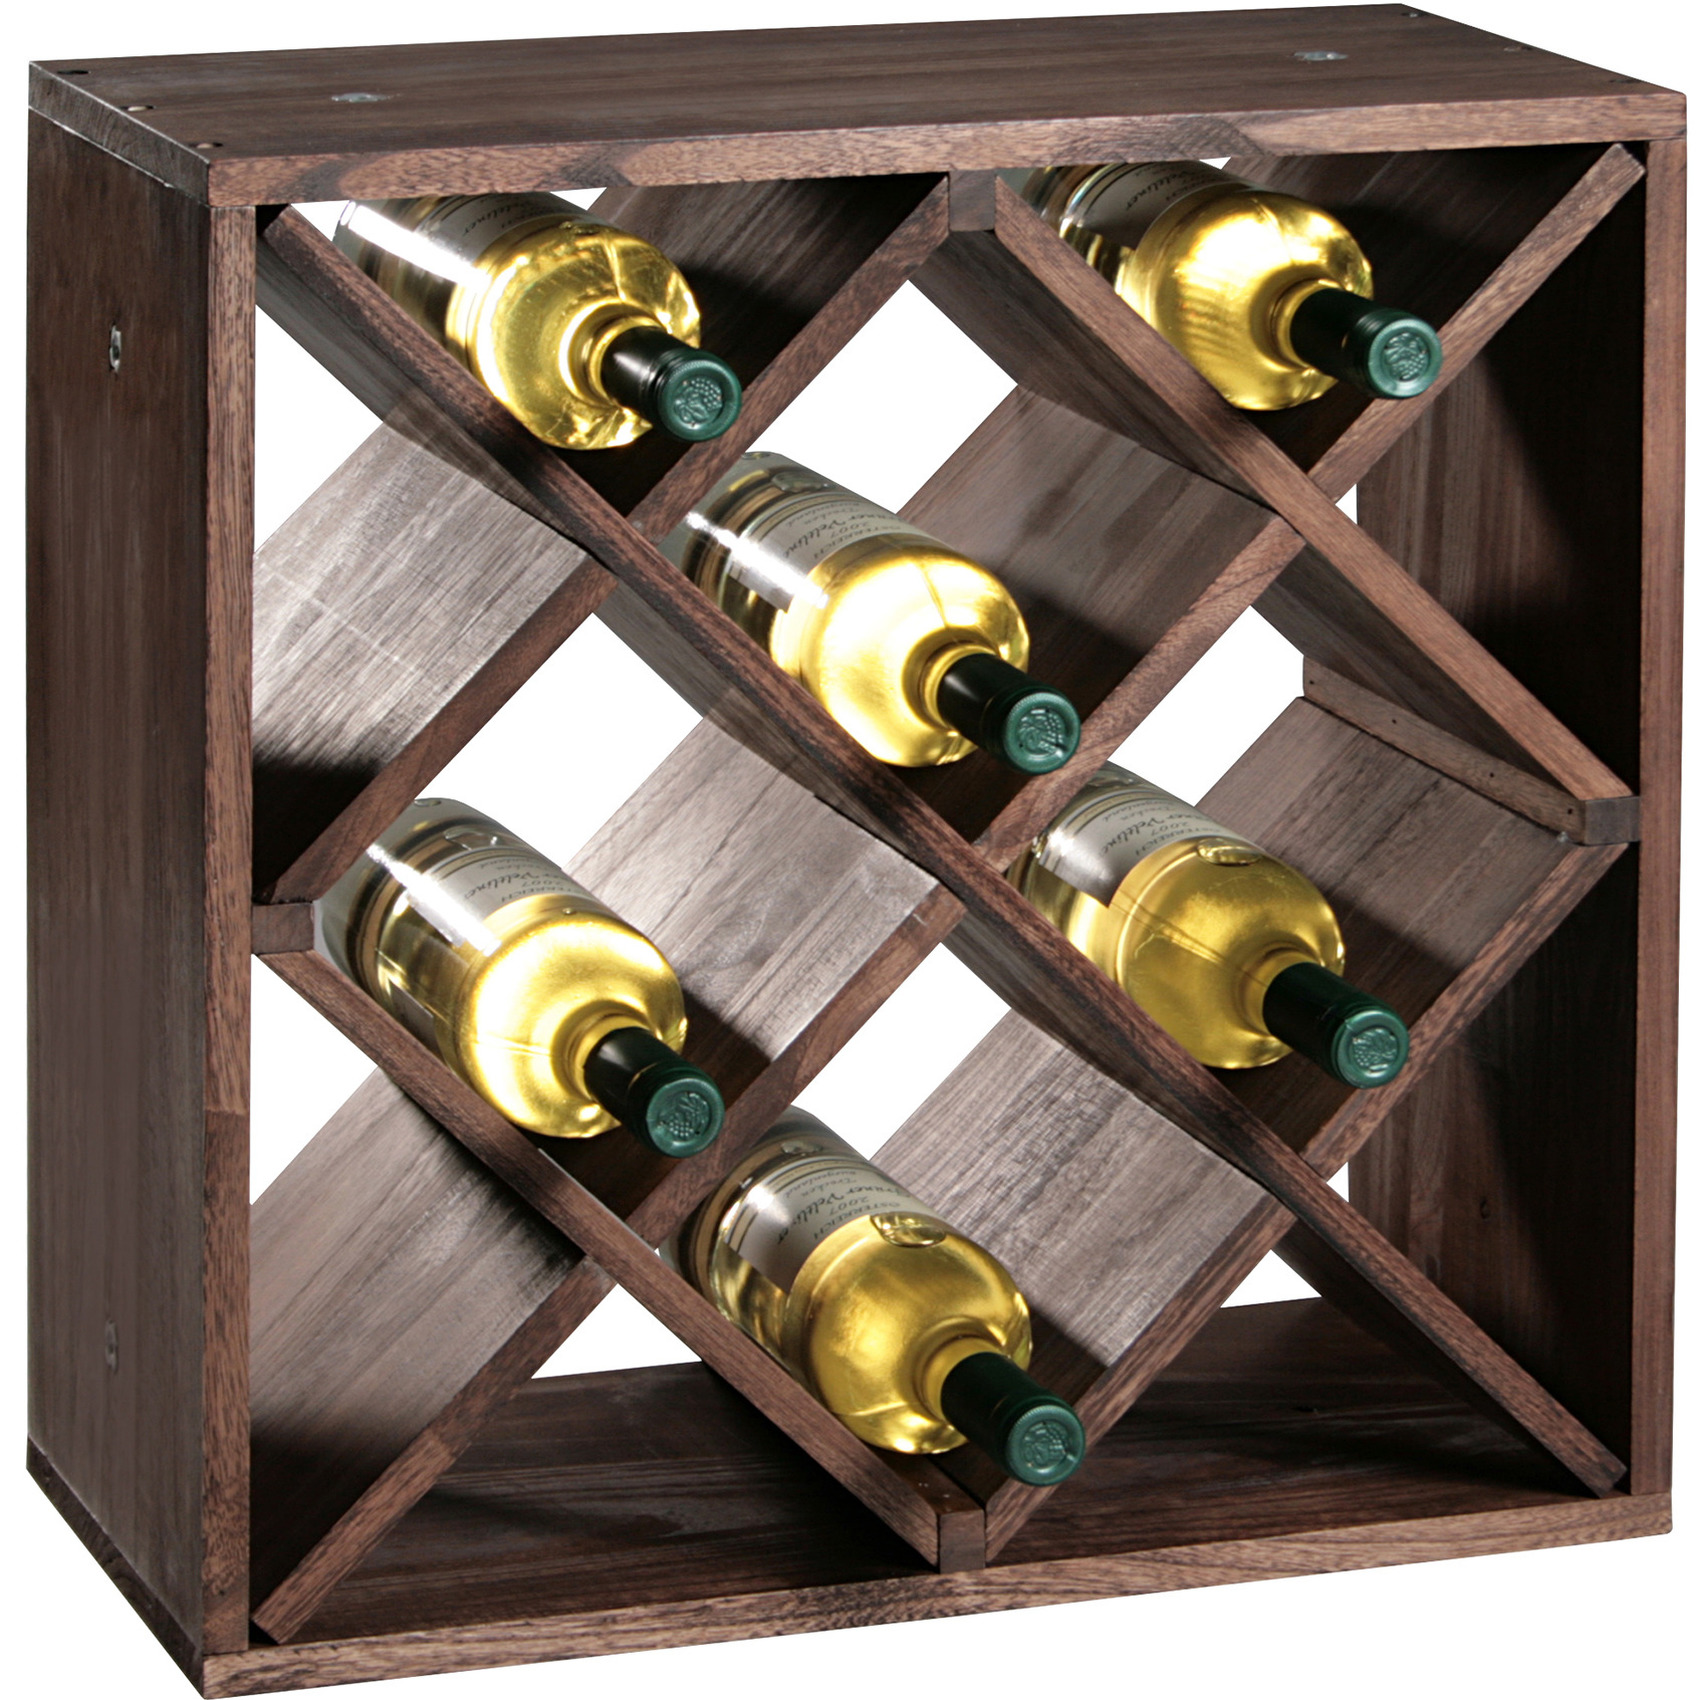 1x Houten wijnflesrek-wijnrekken staand voor 16 flessen 25 x 50 x 50 cm